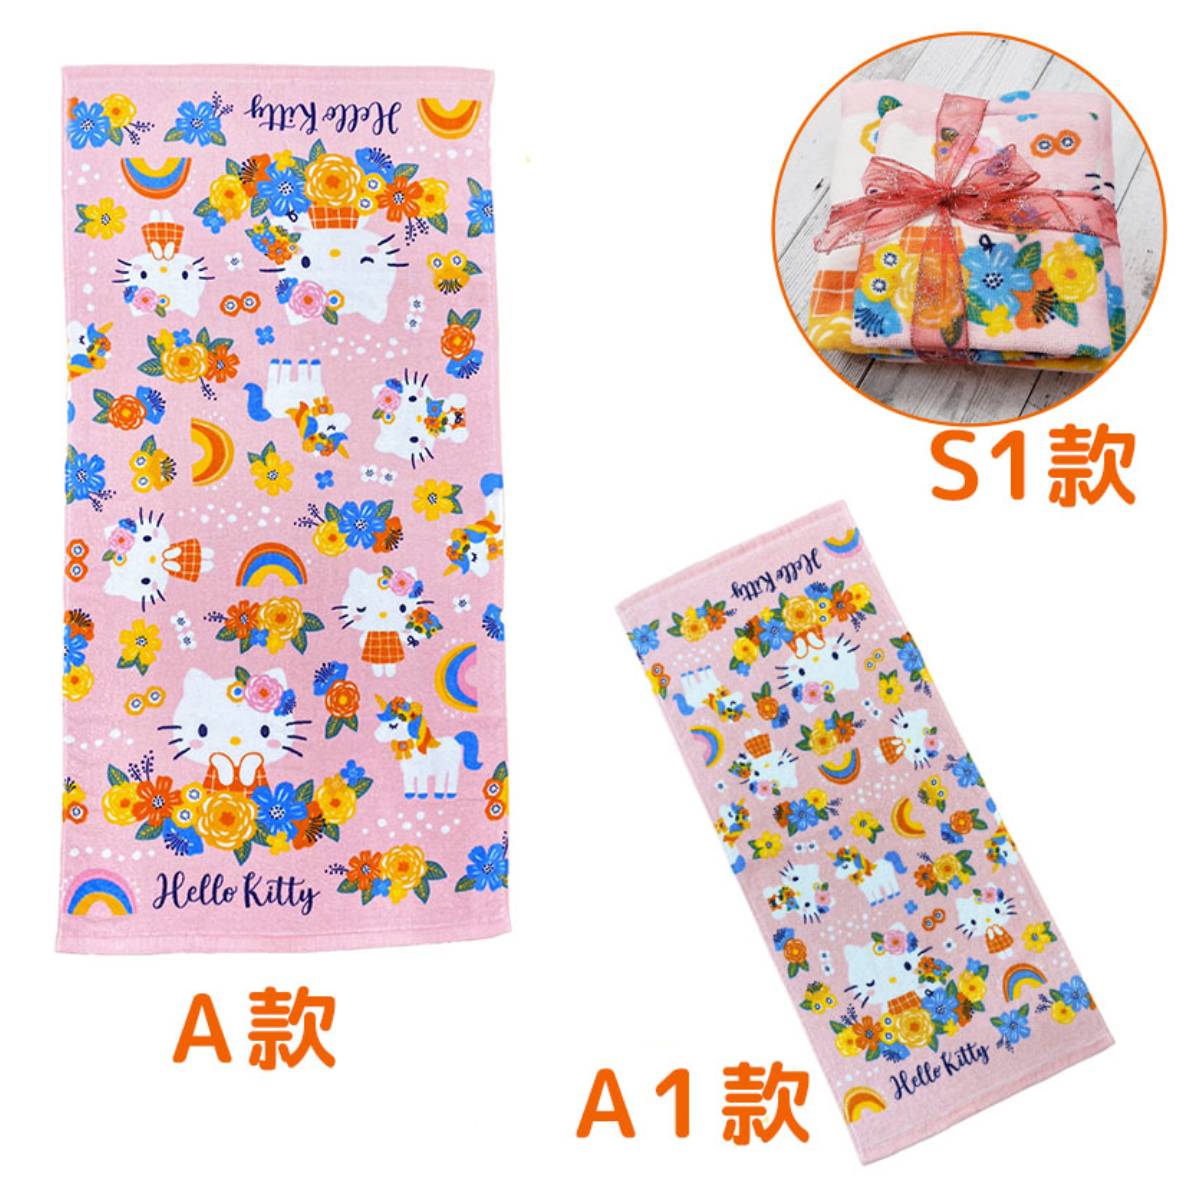 Bath Towel - Sanrio (Japan Edition)